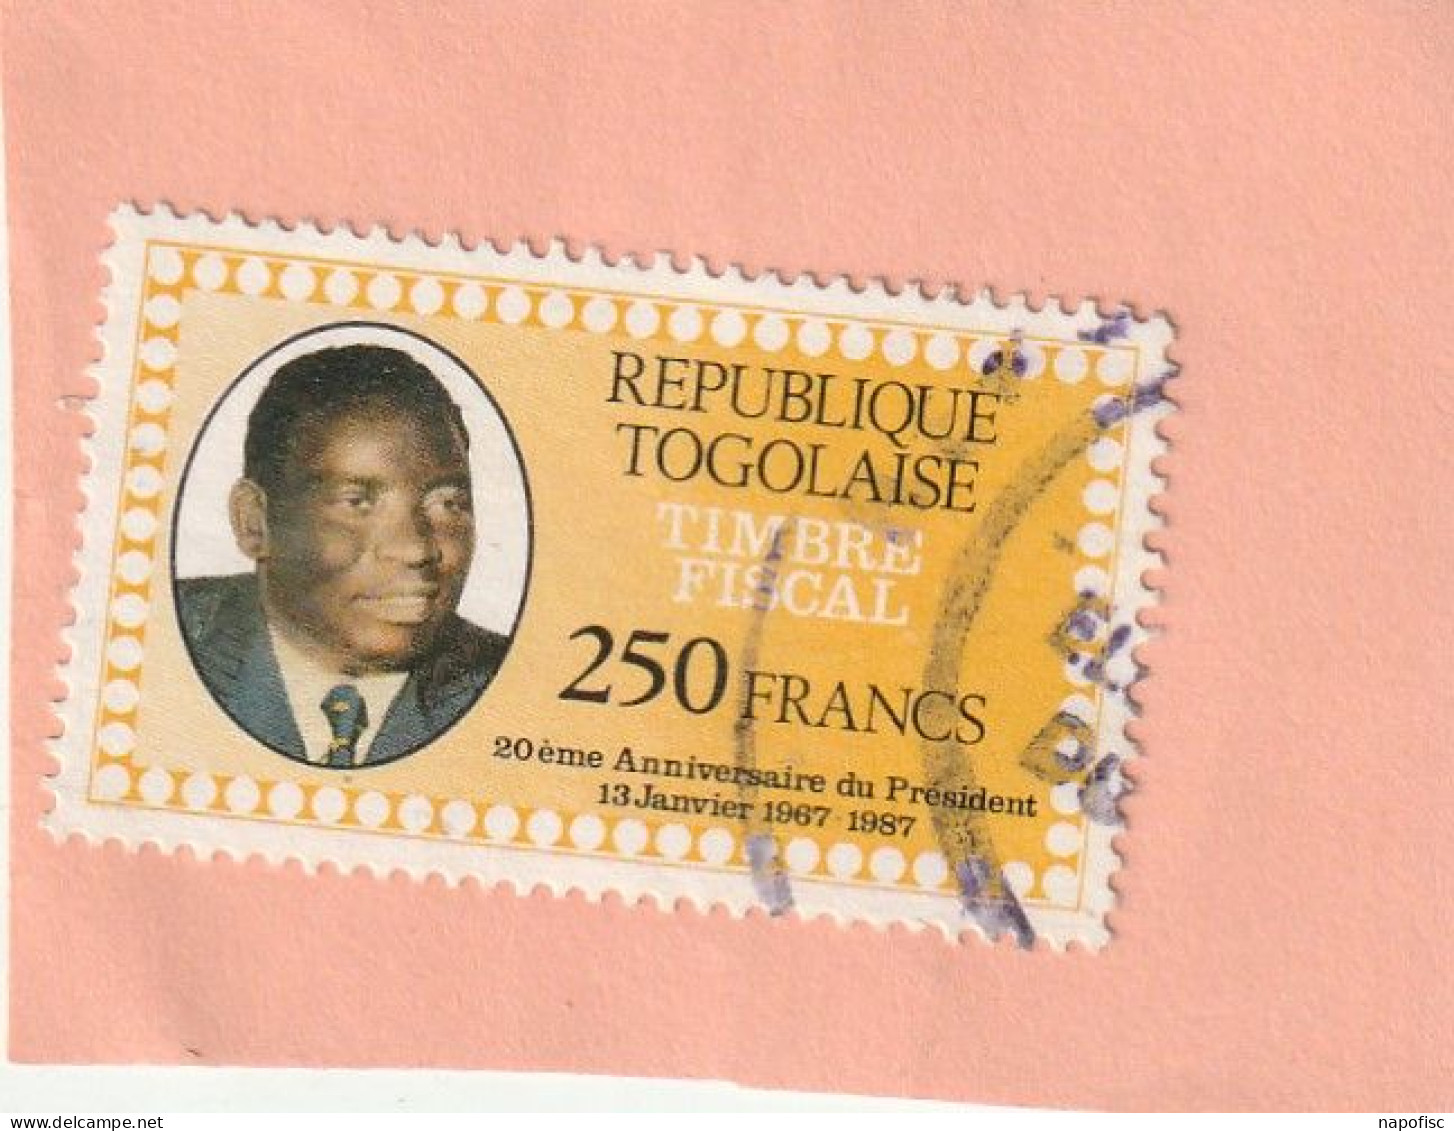 Togo Timbre Fiscal 250 Francs - Togo (1960-...)